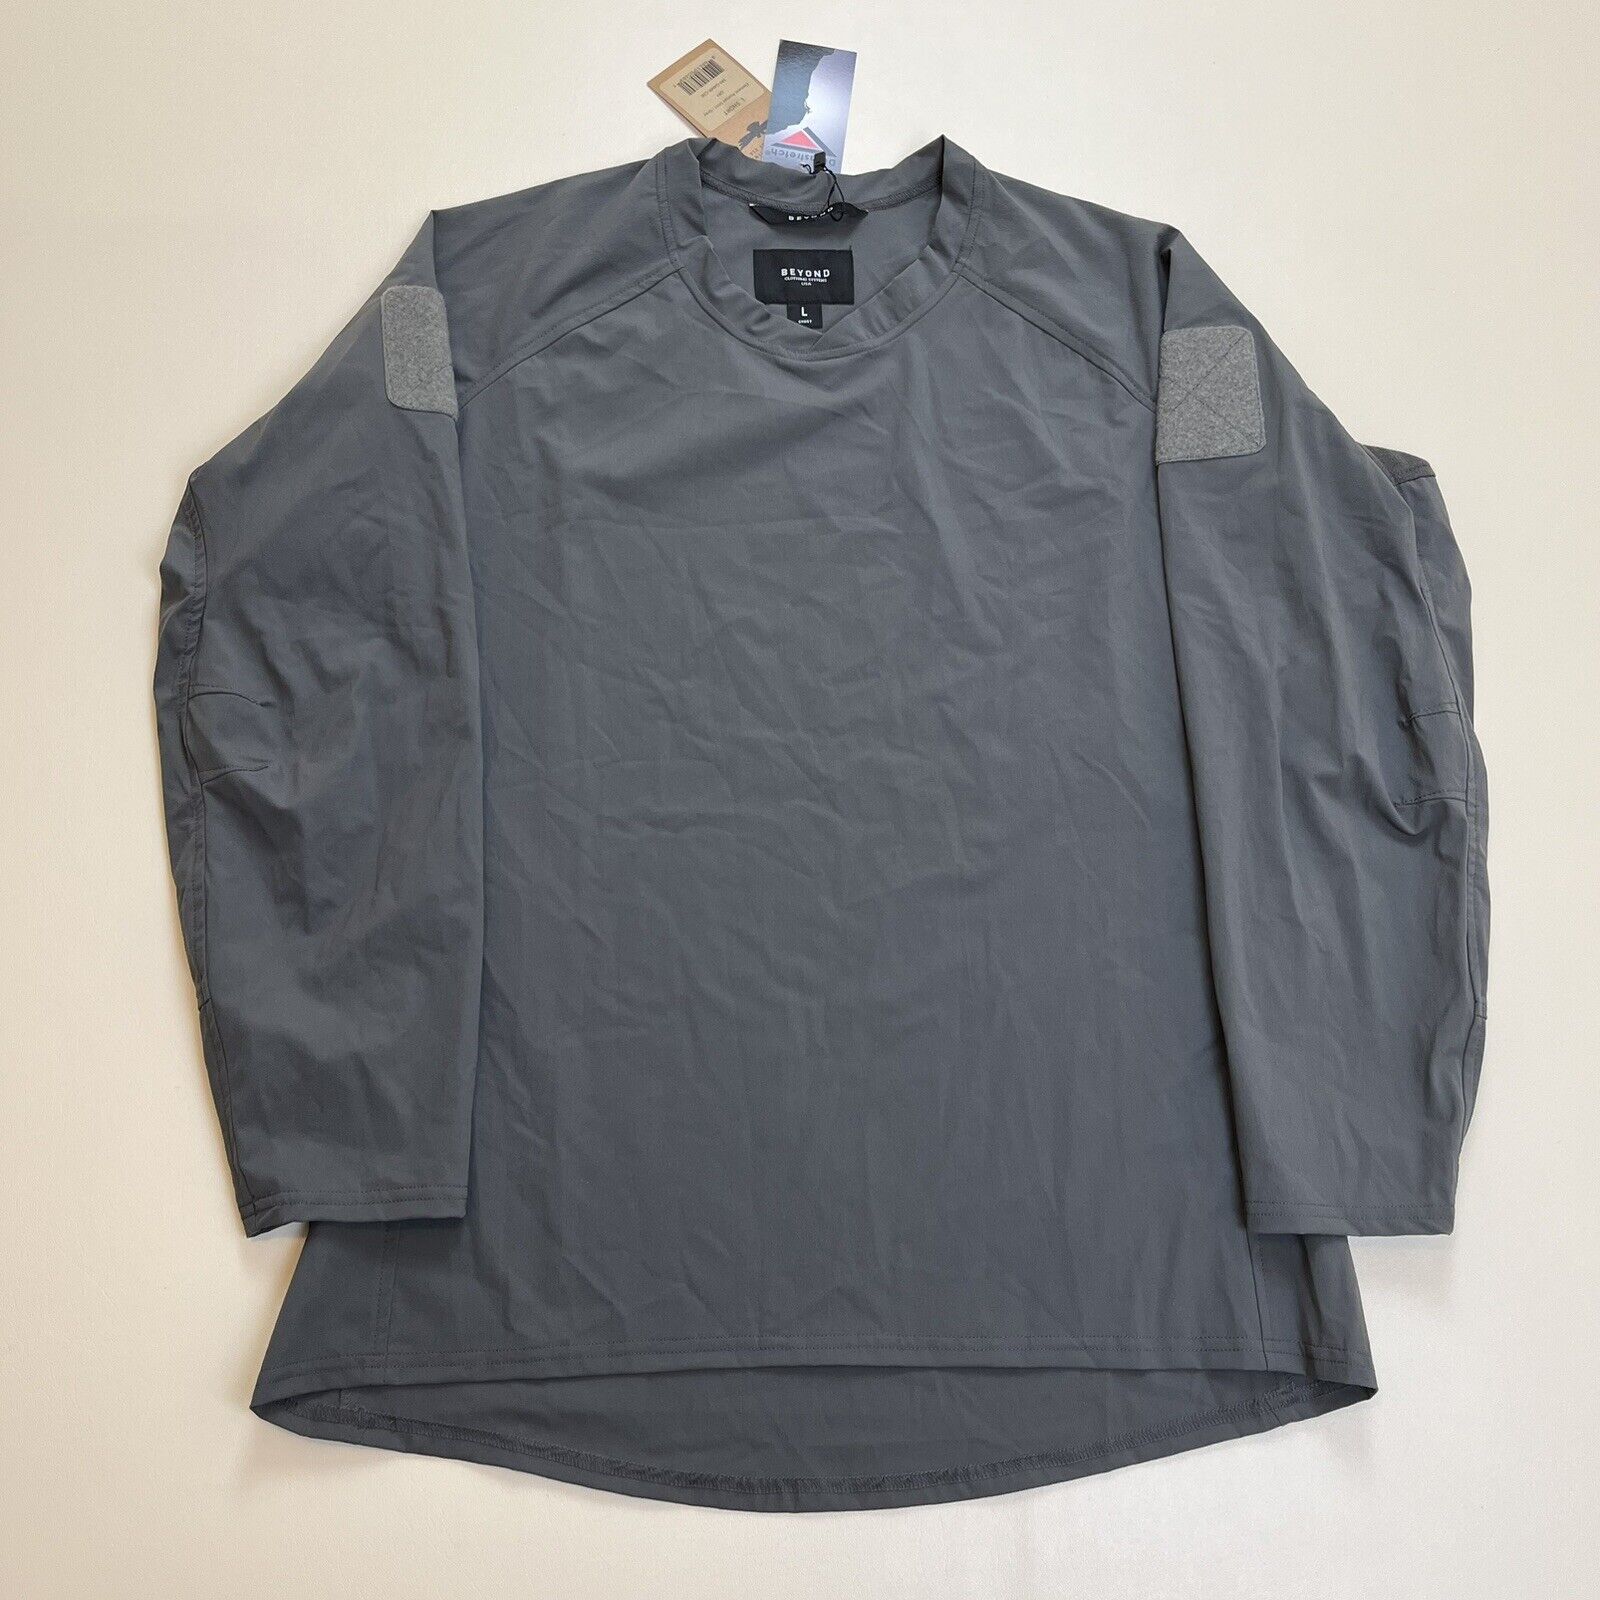 Beyond Clothing Element Roman Shirt - Grey - Large Short